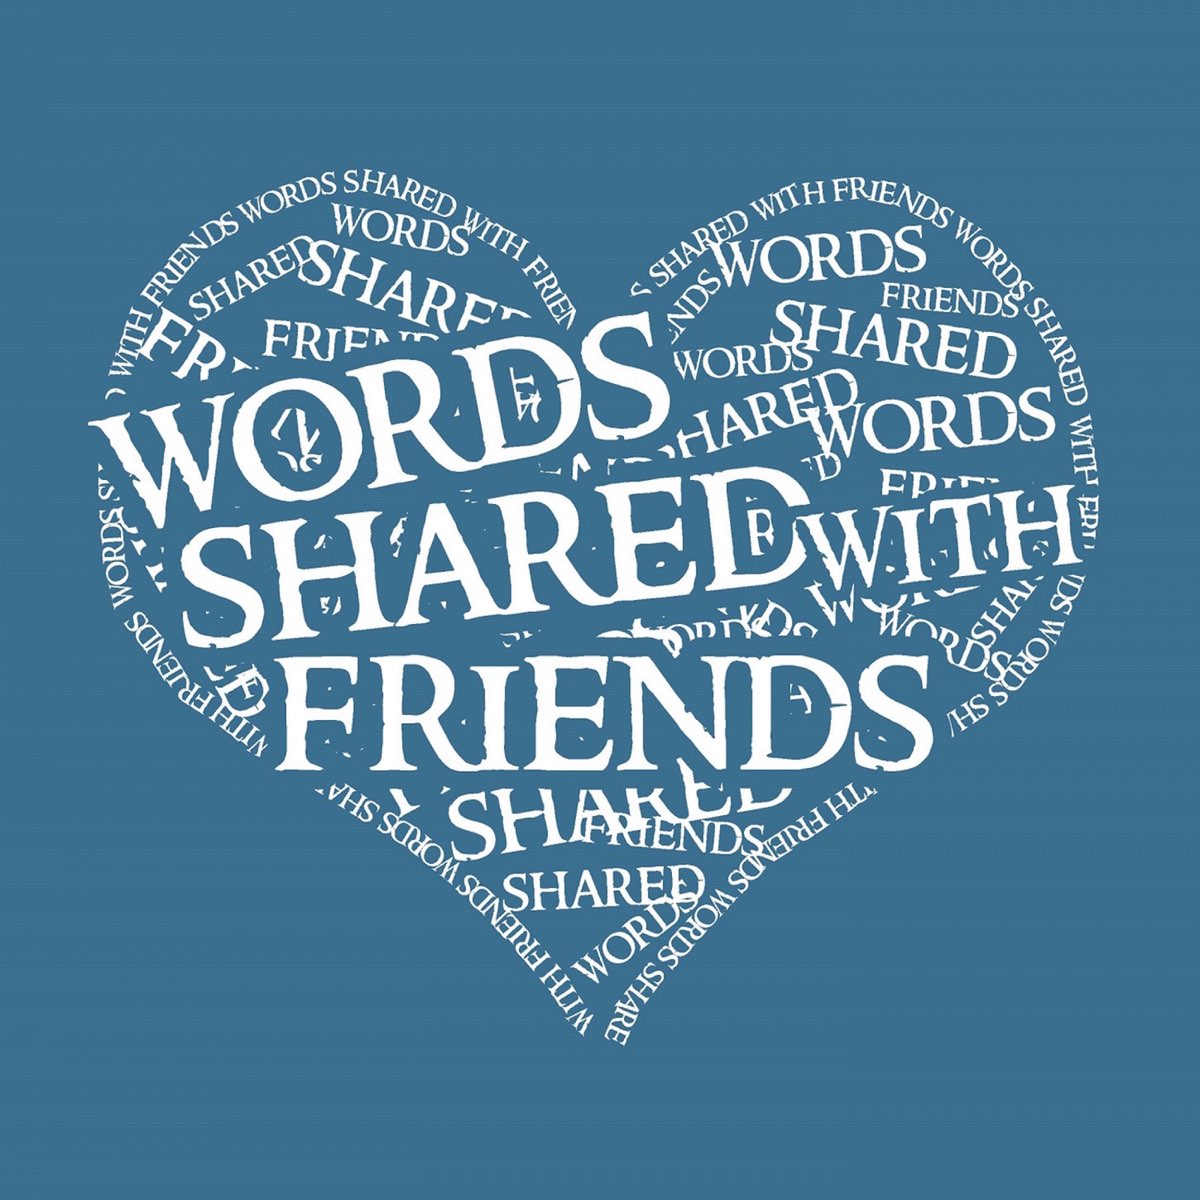 My best friend words. Friendship Word. Shares Words. Shared Words. Friendship with Words.